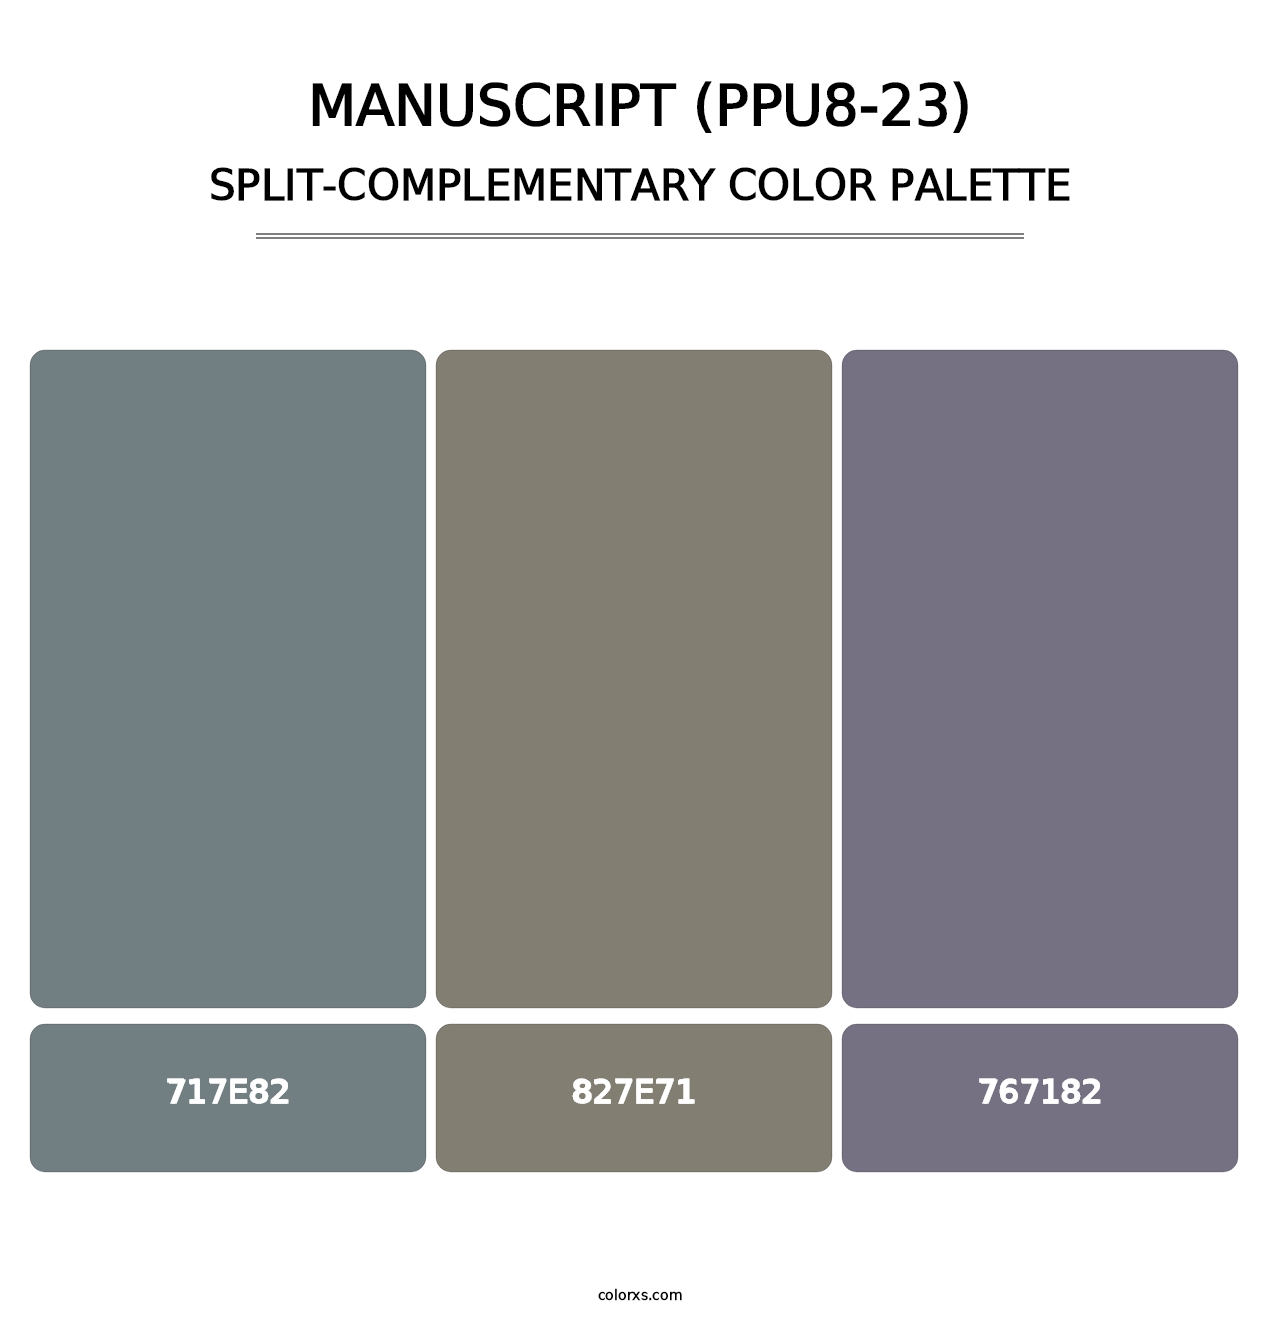 Manuscript (PPU8-23) - Split-Complementary Color Palette